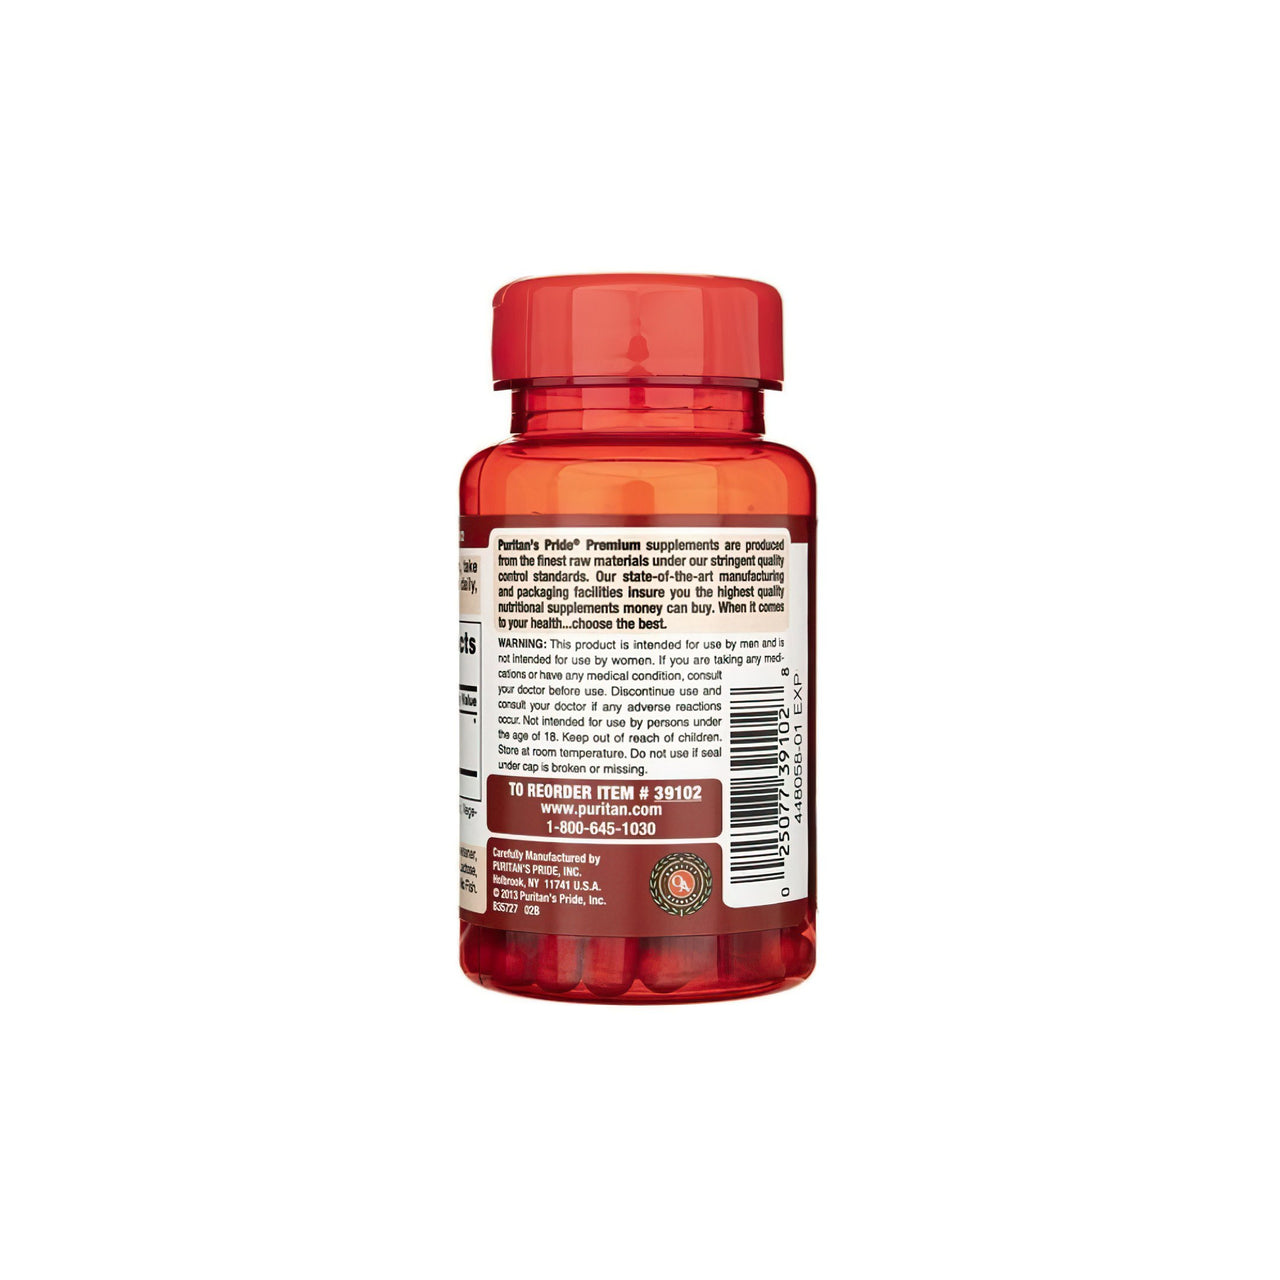 Eine Flasche Puritan's Pride Maca 500 mg 60 Rapid Release Capsules auf einem weißen Hintergrund.